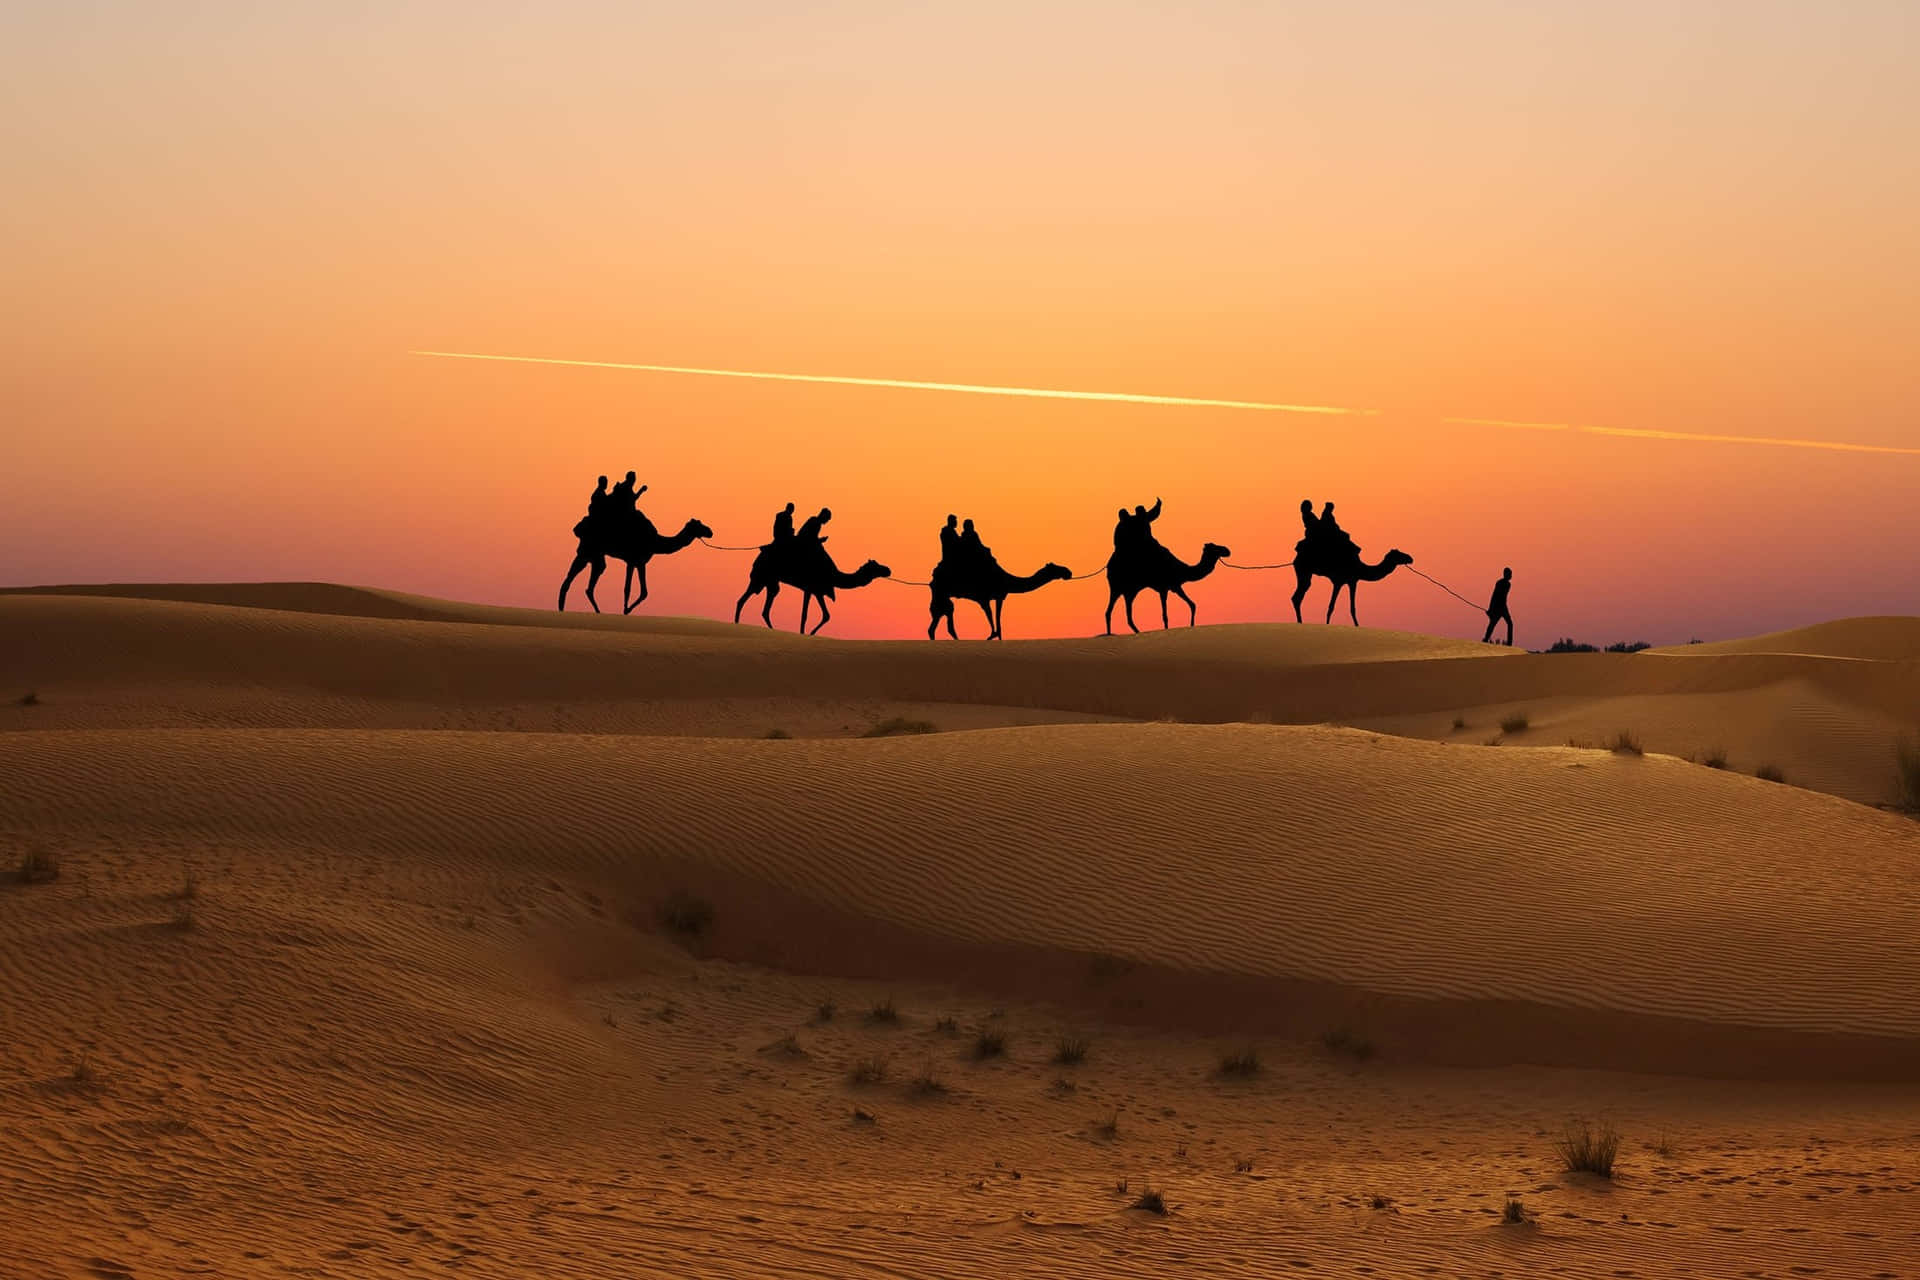 Umgrupo De Pessoas Montando Em Camelos No Deserto.